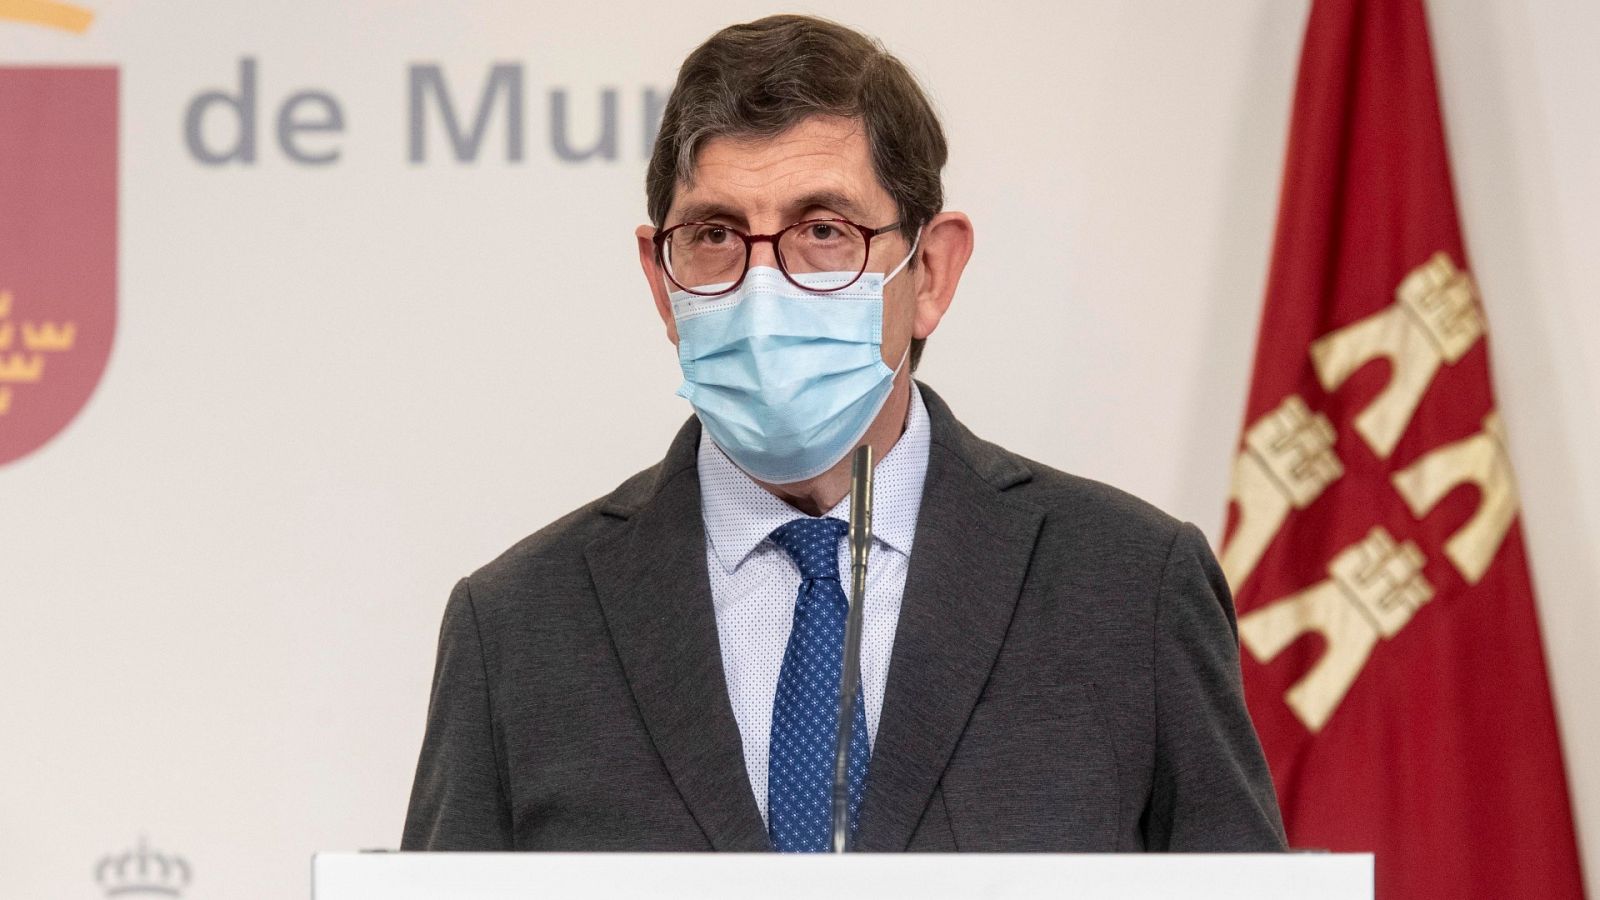 El consejero de Salud de Murcia pide disculpas por vacunarse pero justifica que lo hizo según el protocolo